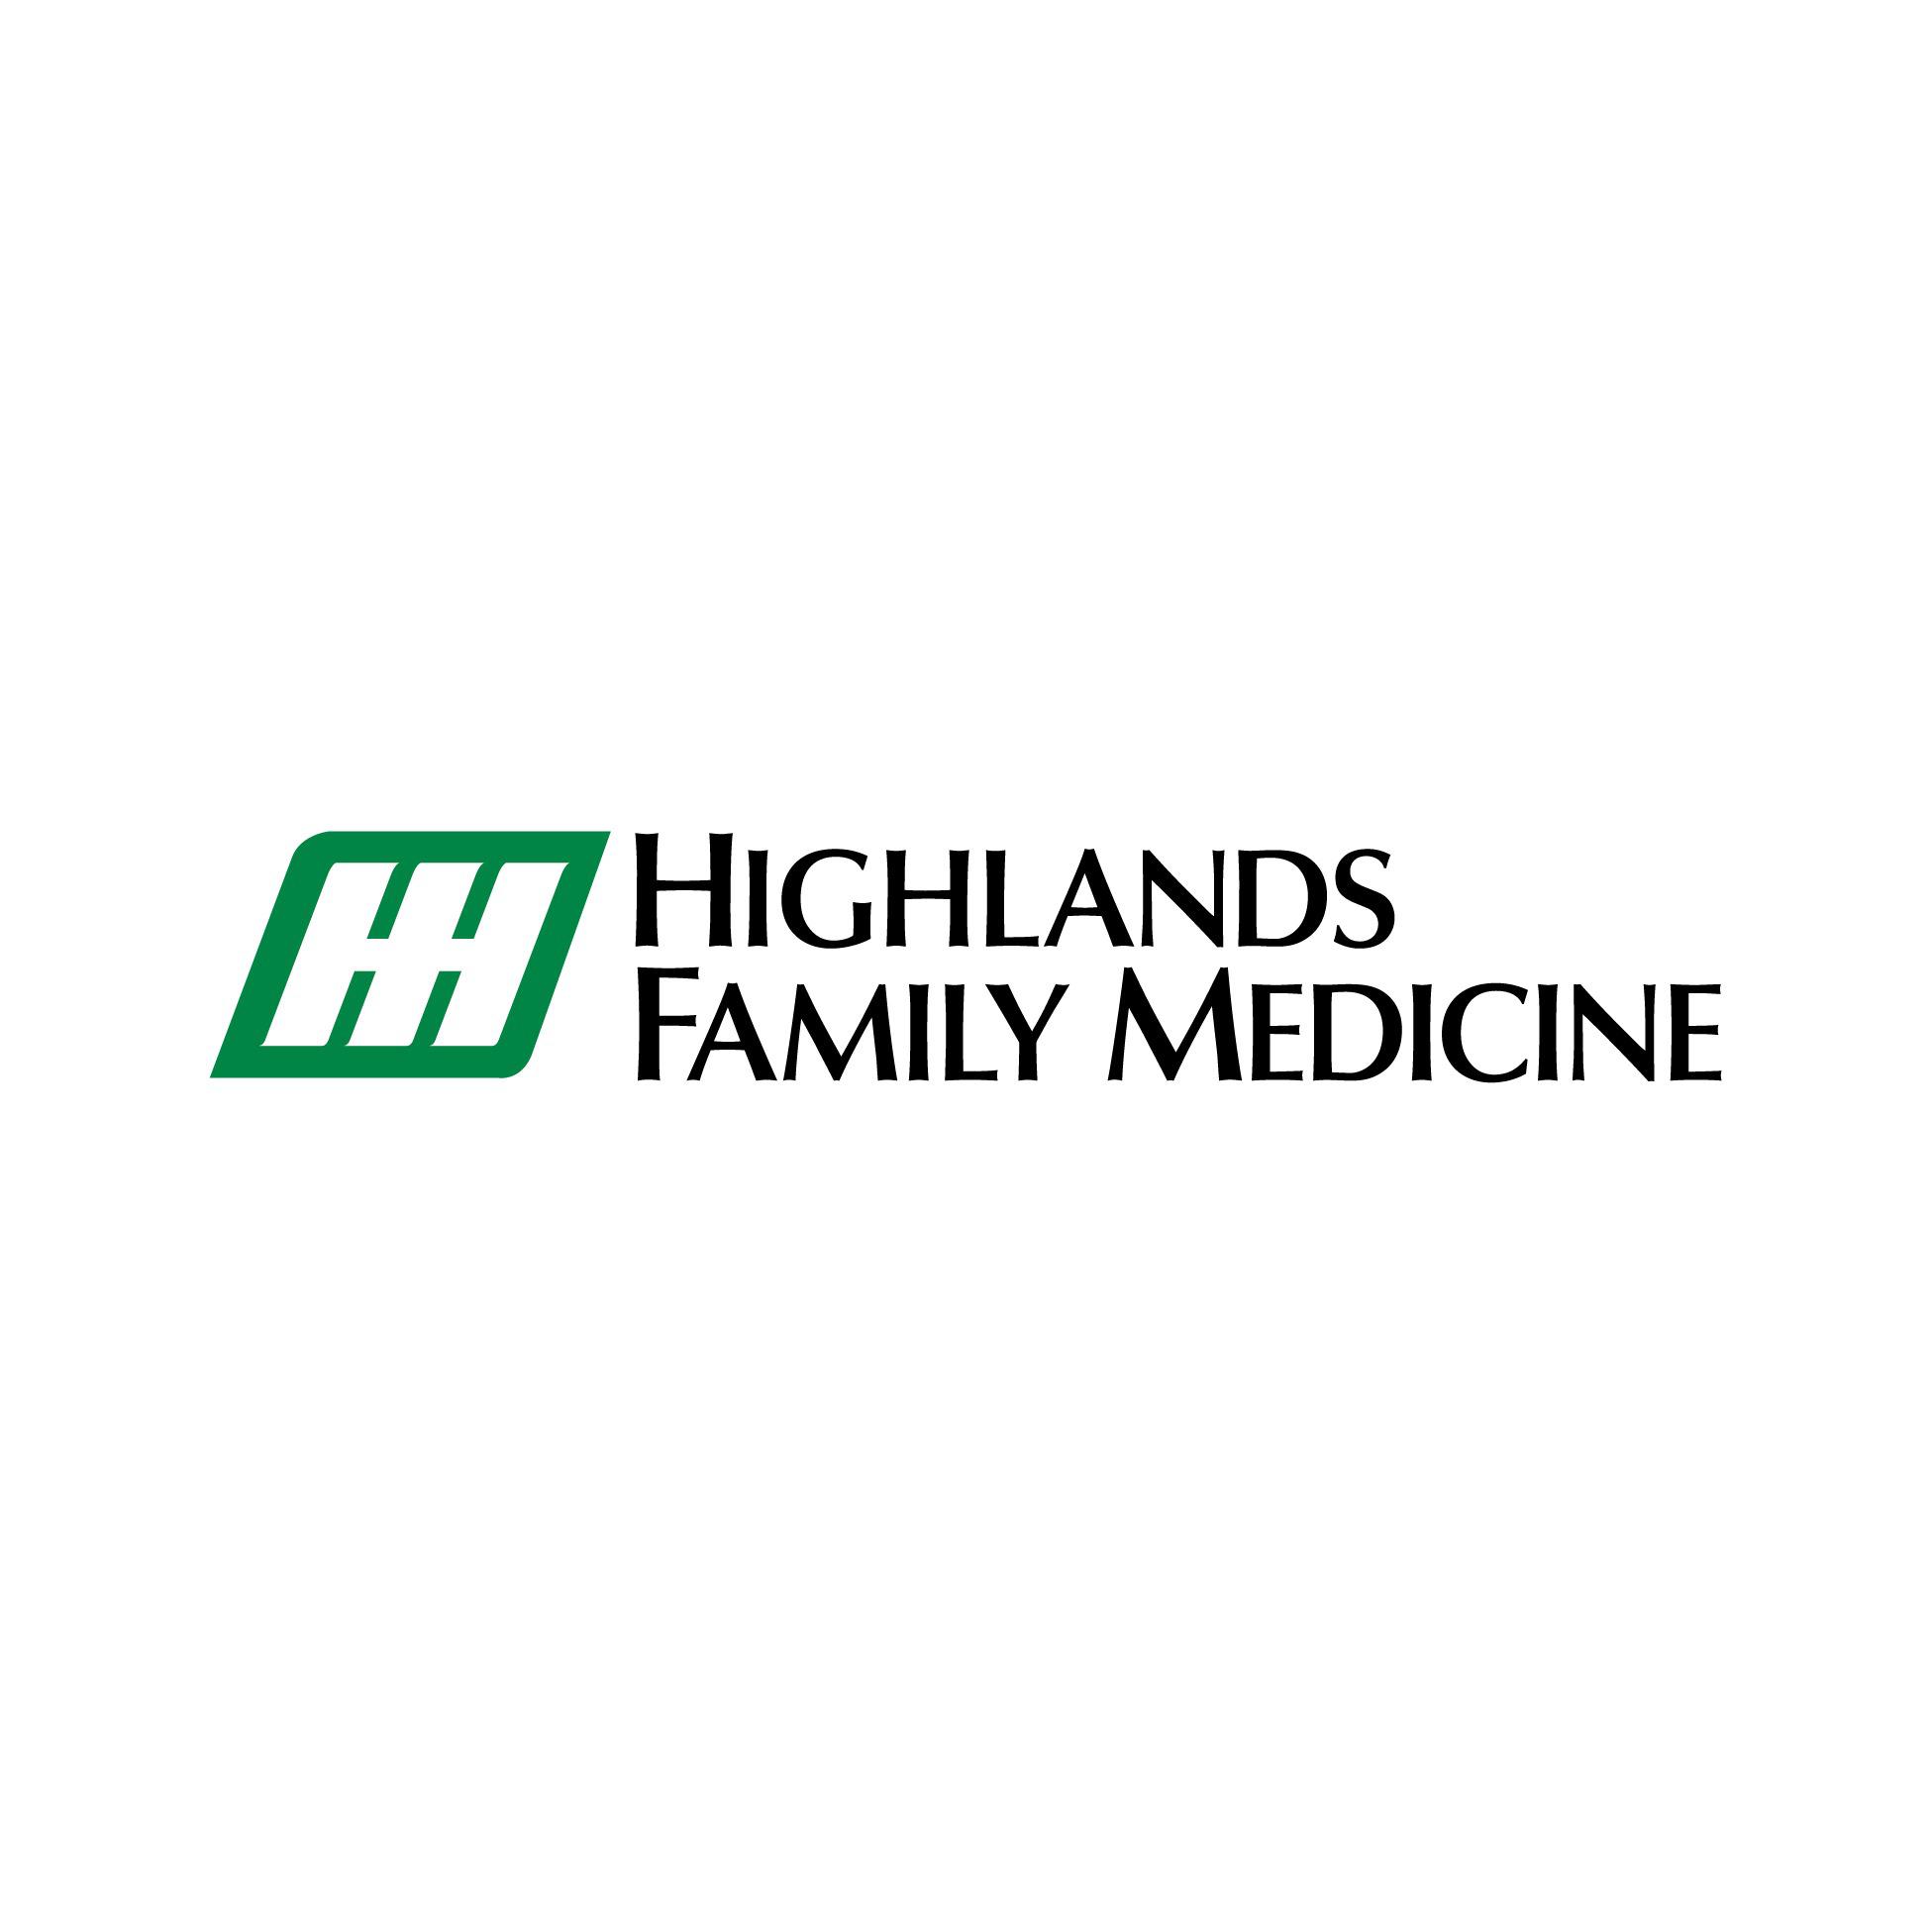 Highlands Family Medicine